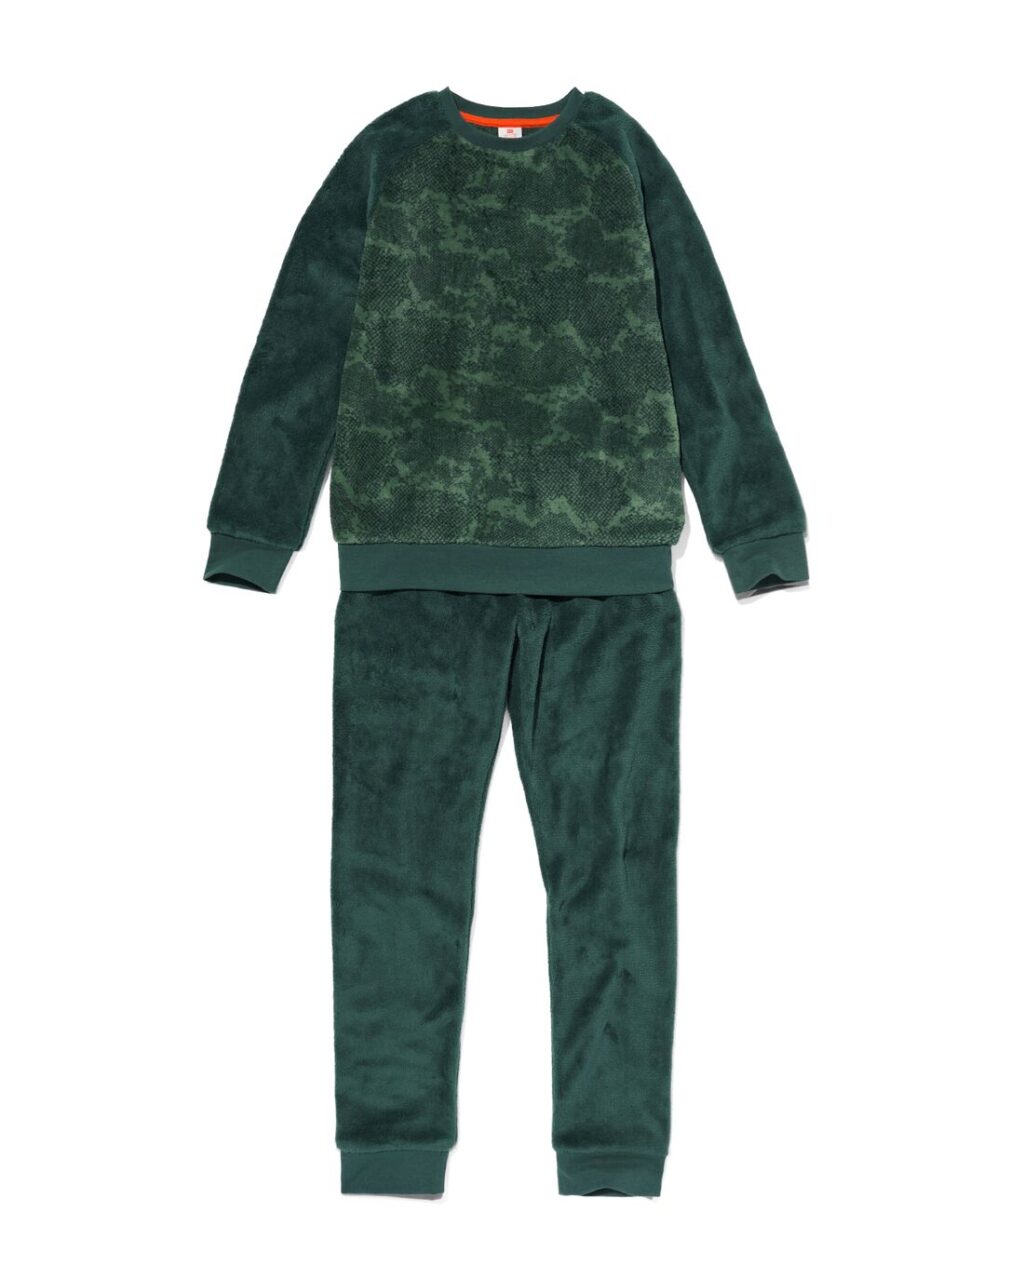 HEMA Kinder Pyjama Fleece Abstract Groen (groen) ~ Spinze.nl